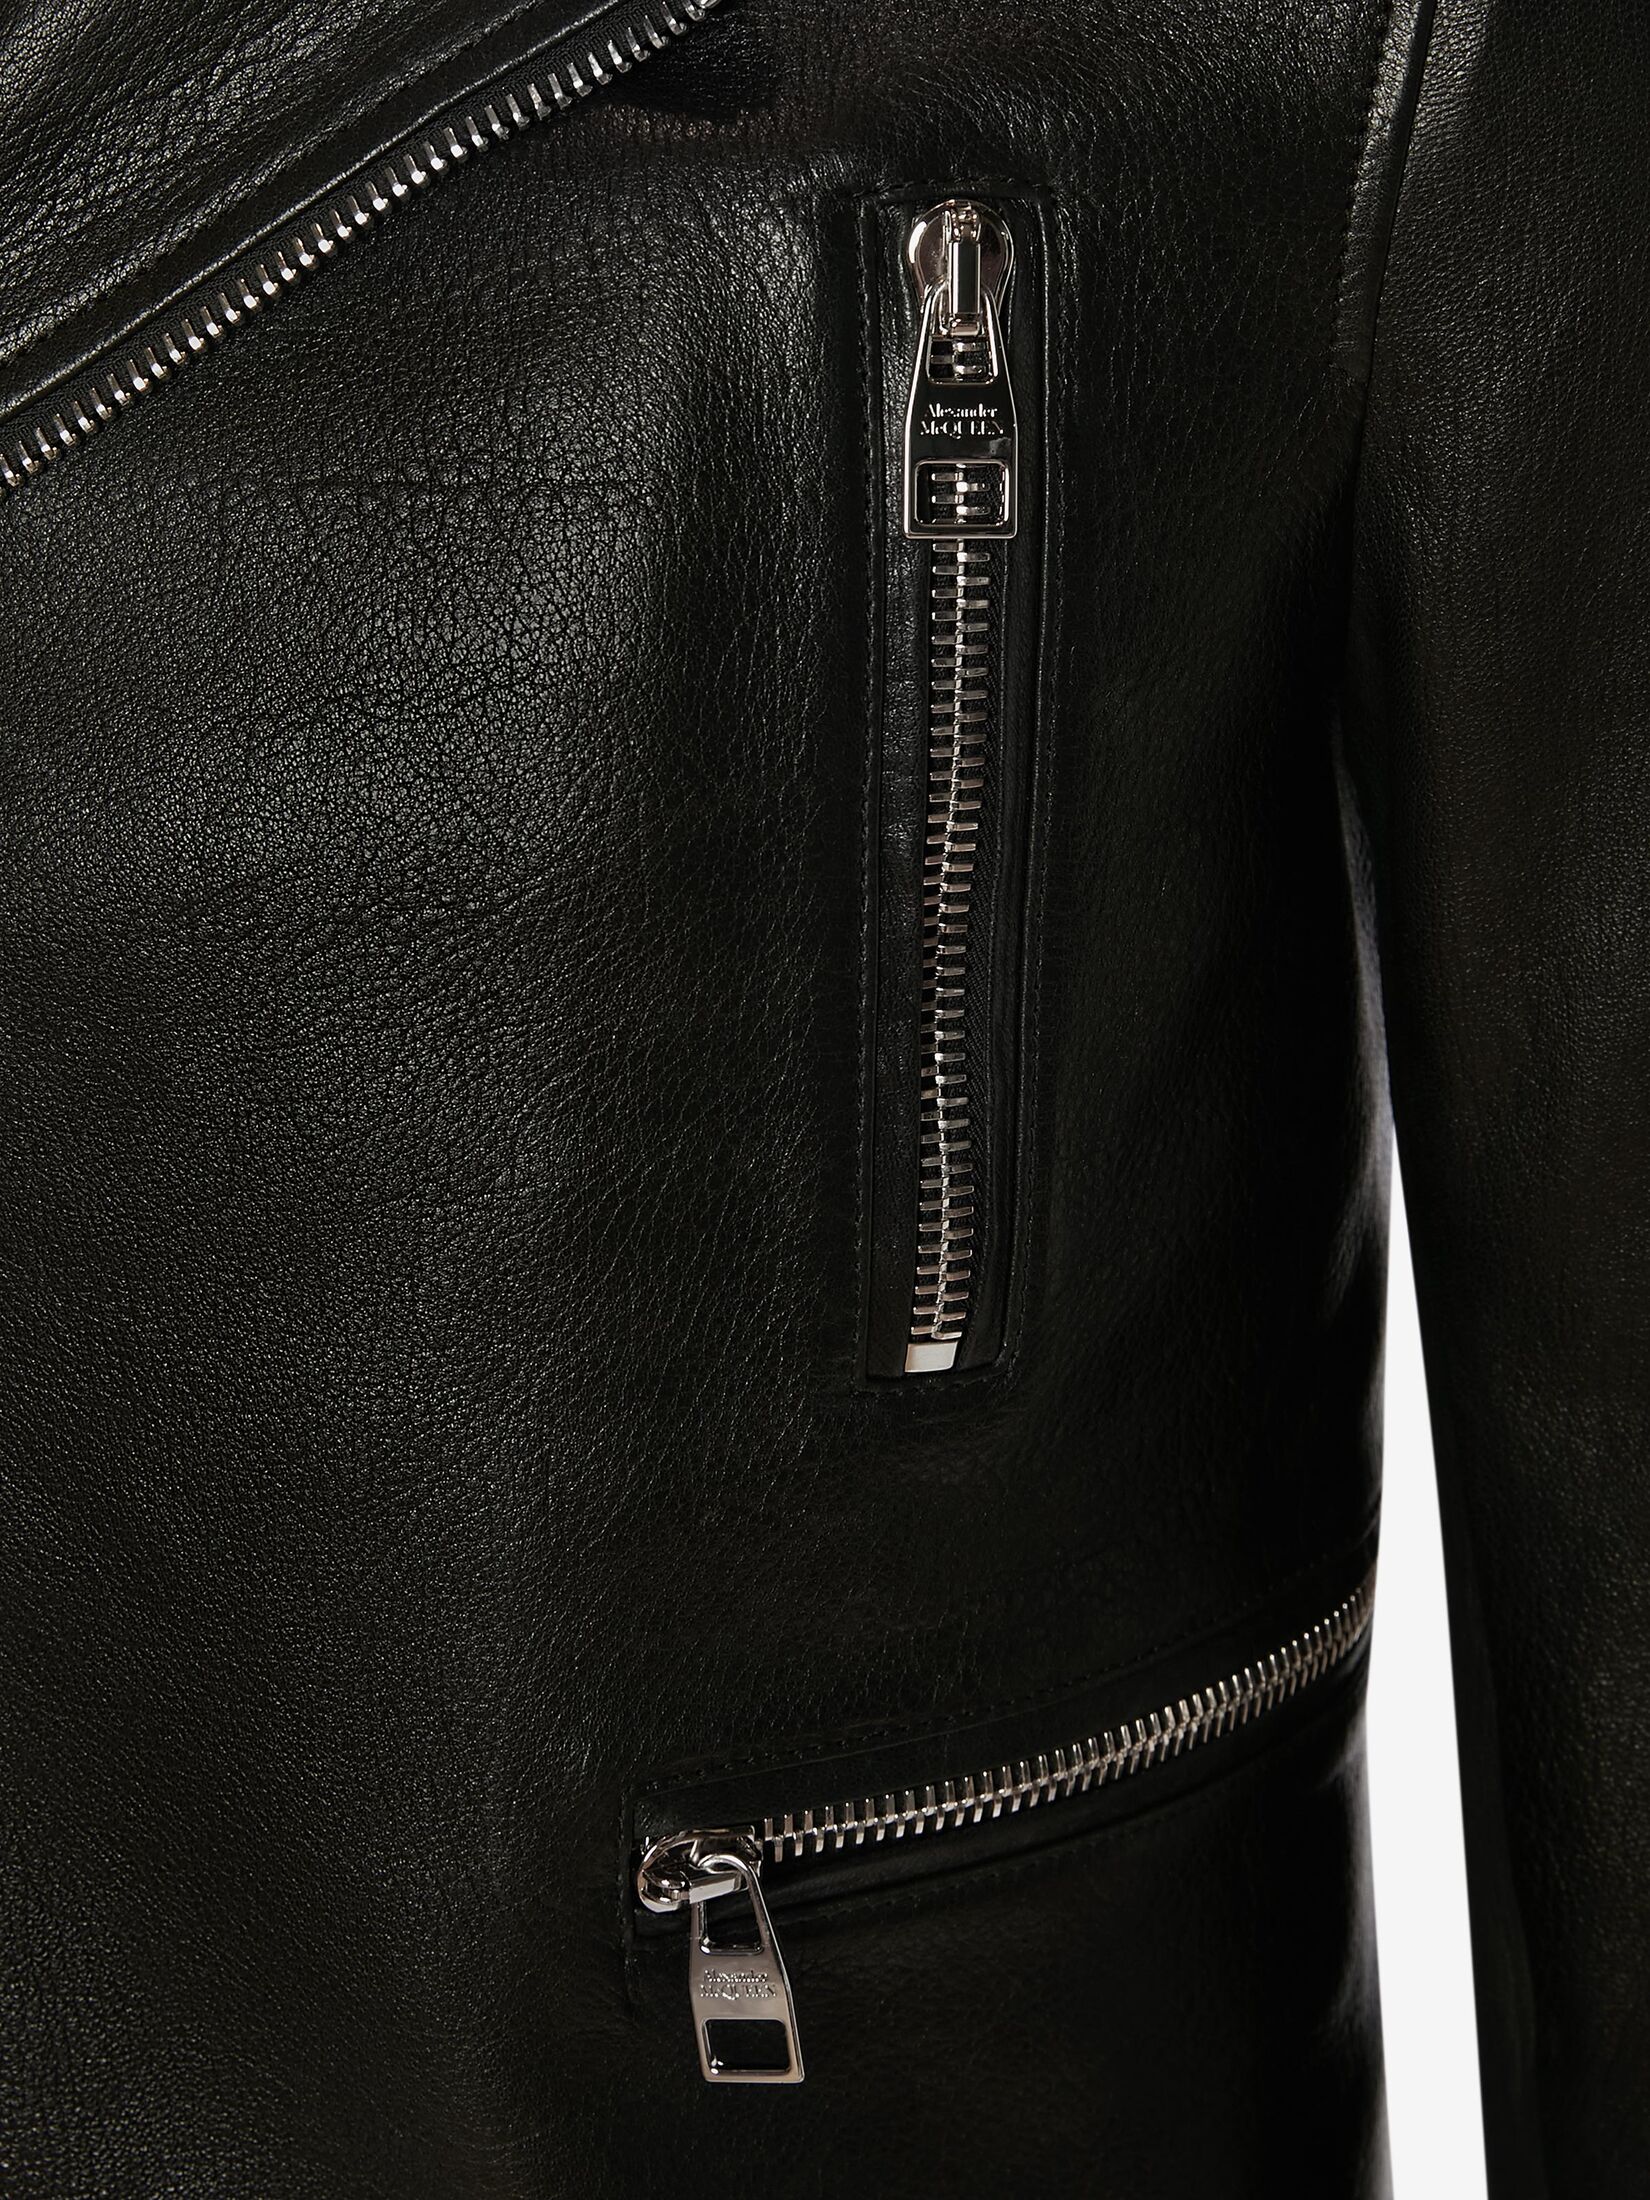 McQueen Classic Leather Biker Jacket